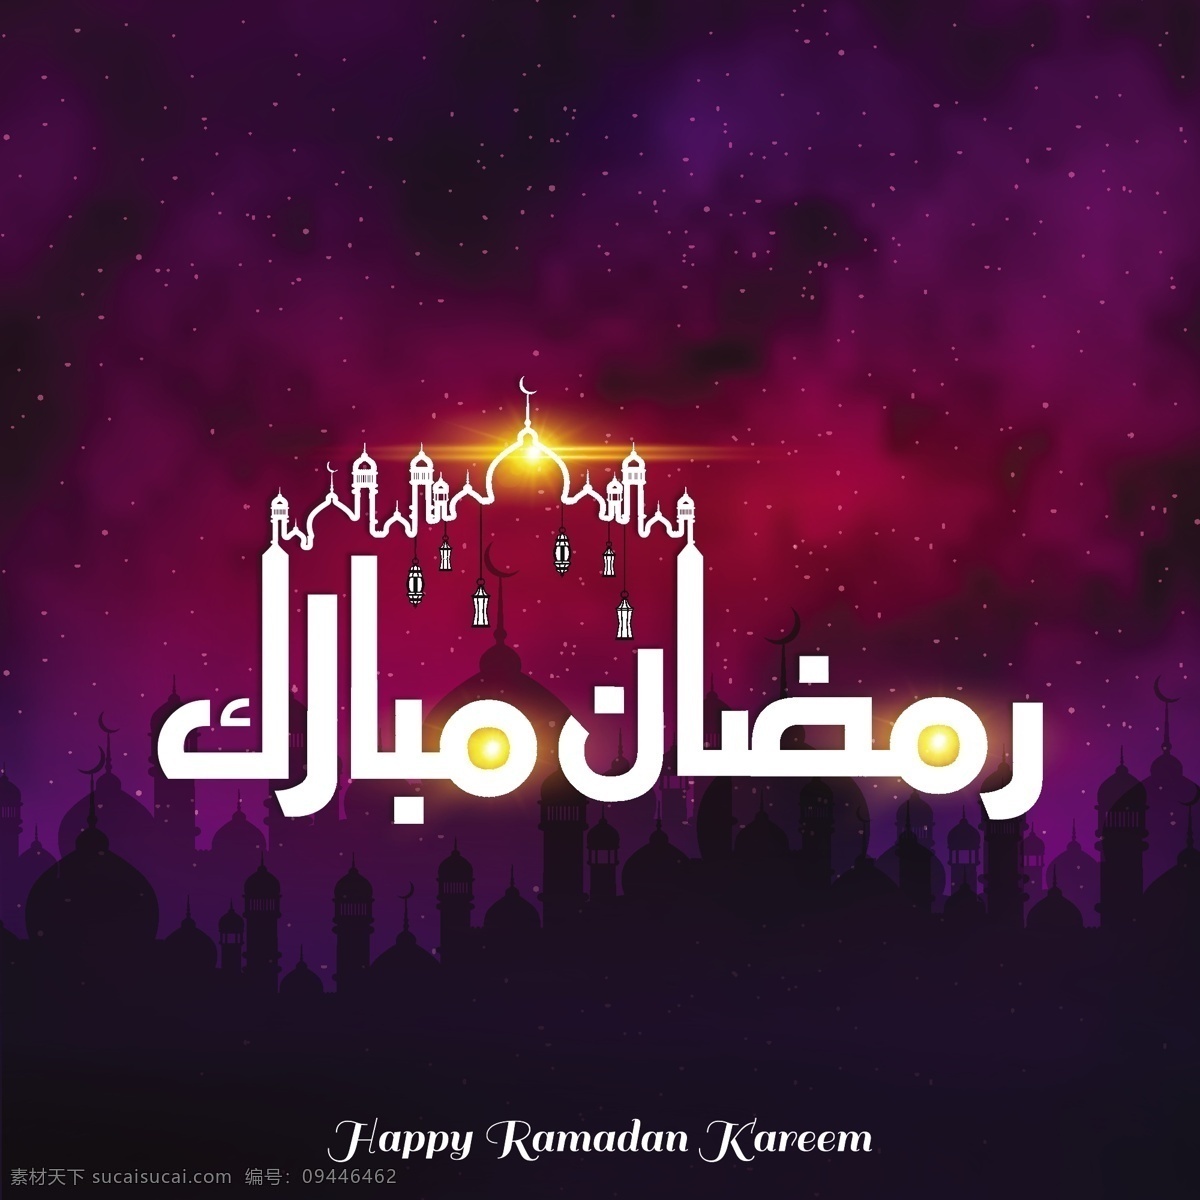 闪亮 斋月 背景 庆祝 月亮 阿拉伯语 清真寺 开斋节 宗教 伊斯兰教 穆斯林 斋月卡里姆 文化 传统 阿拉伯 卡里姆